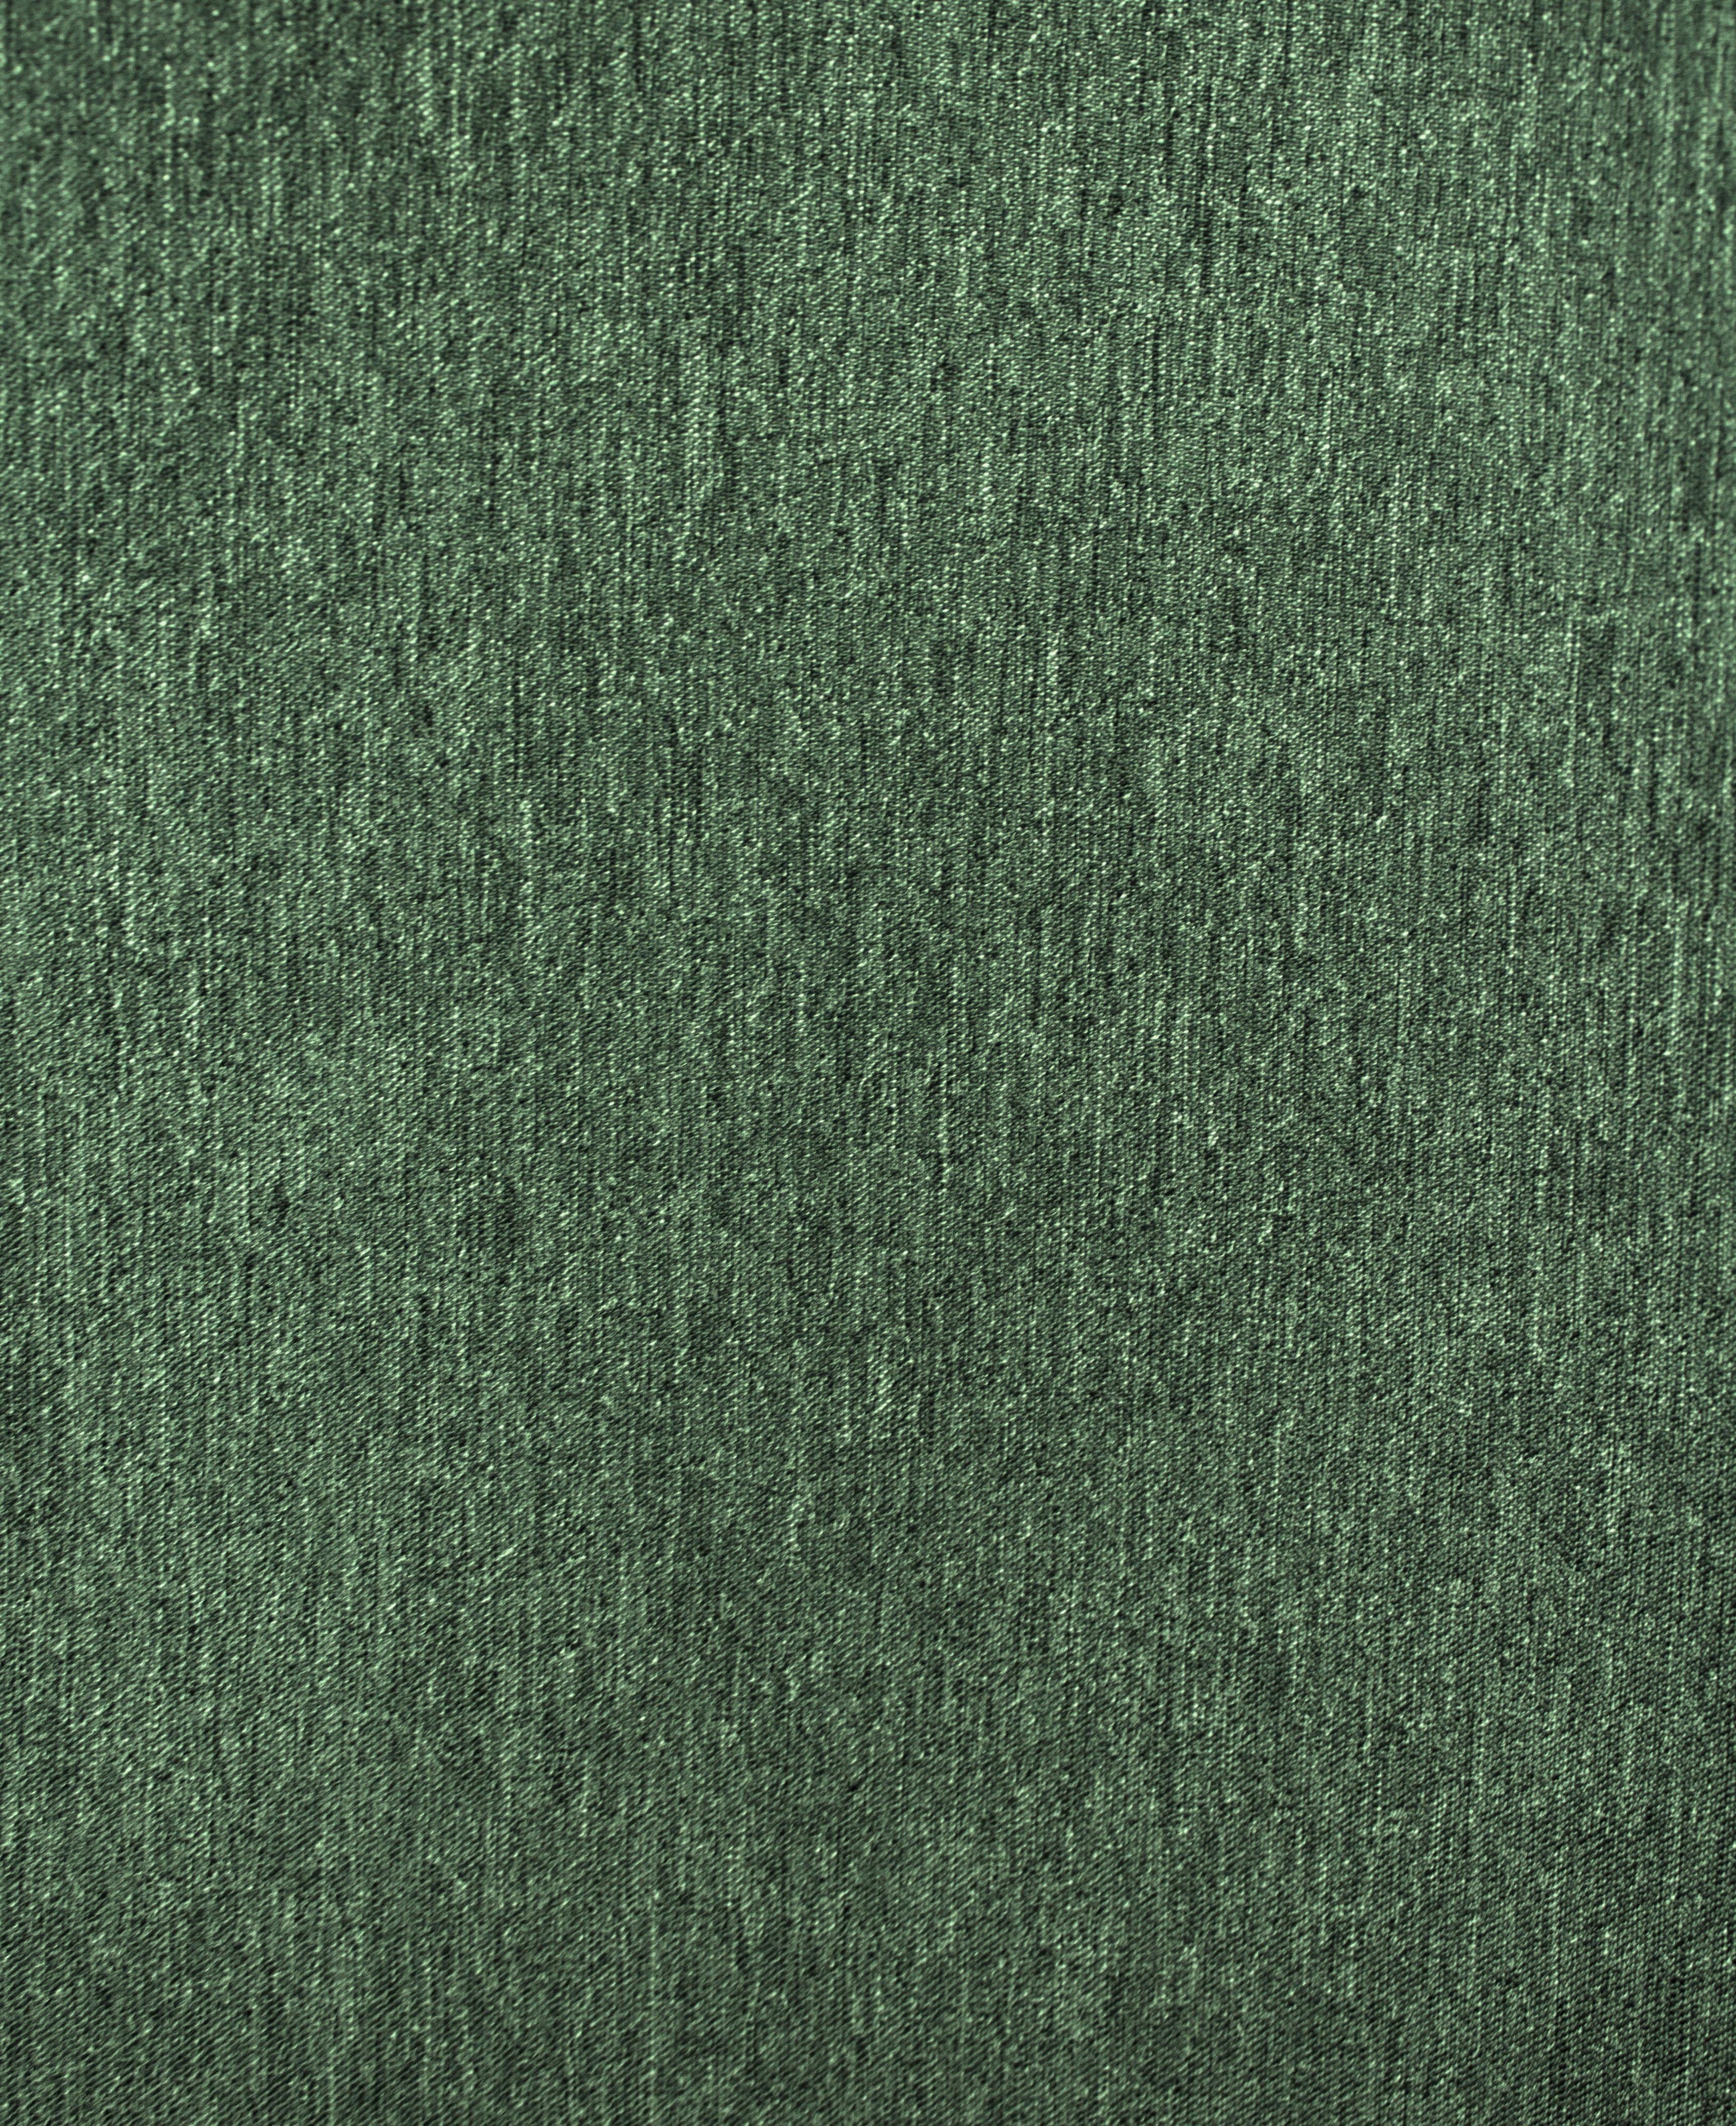 VHG, Vorhang (2 Kräuselband hellgrün Una, St), blickdicht